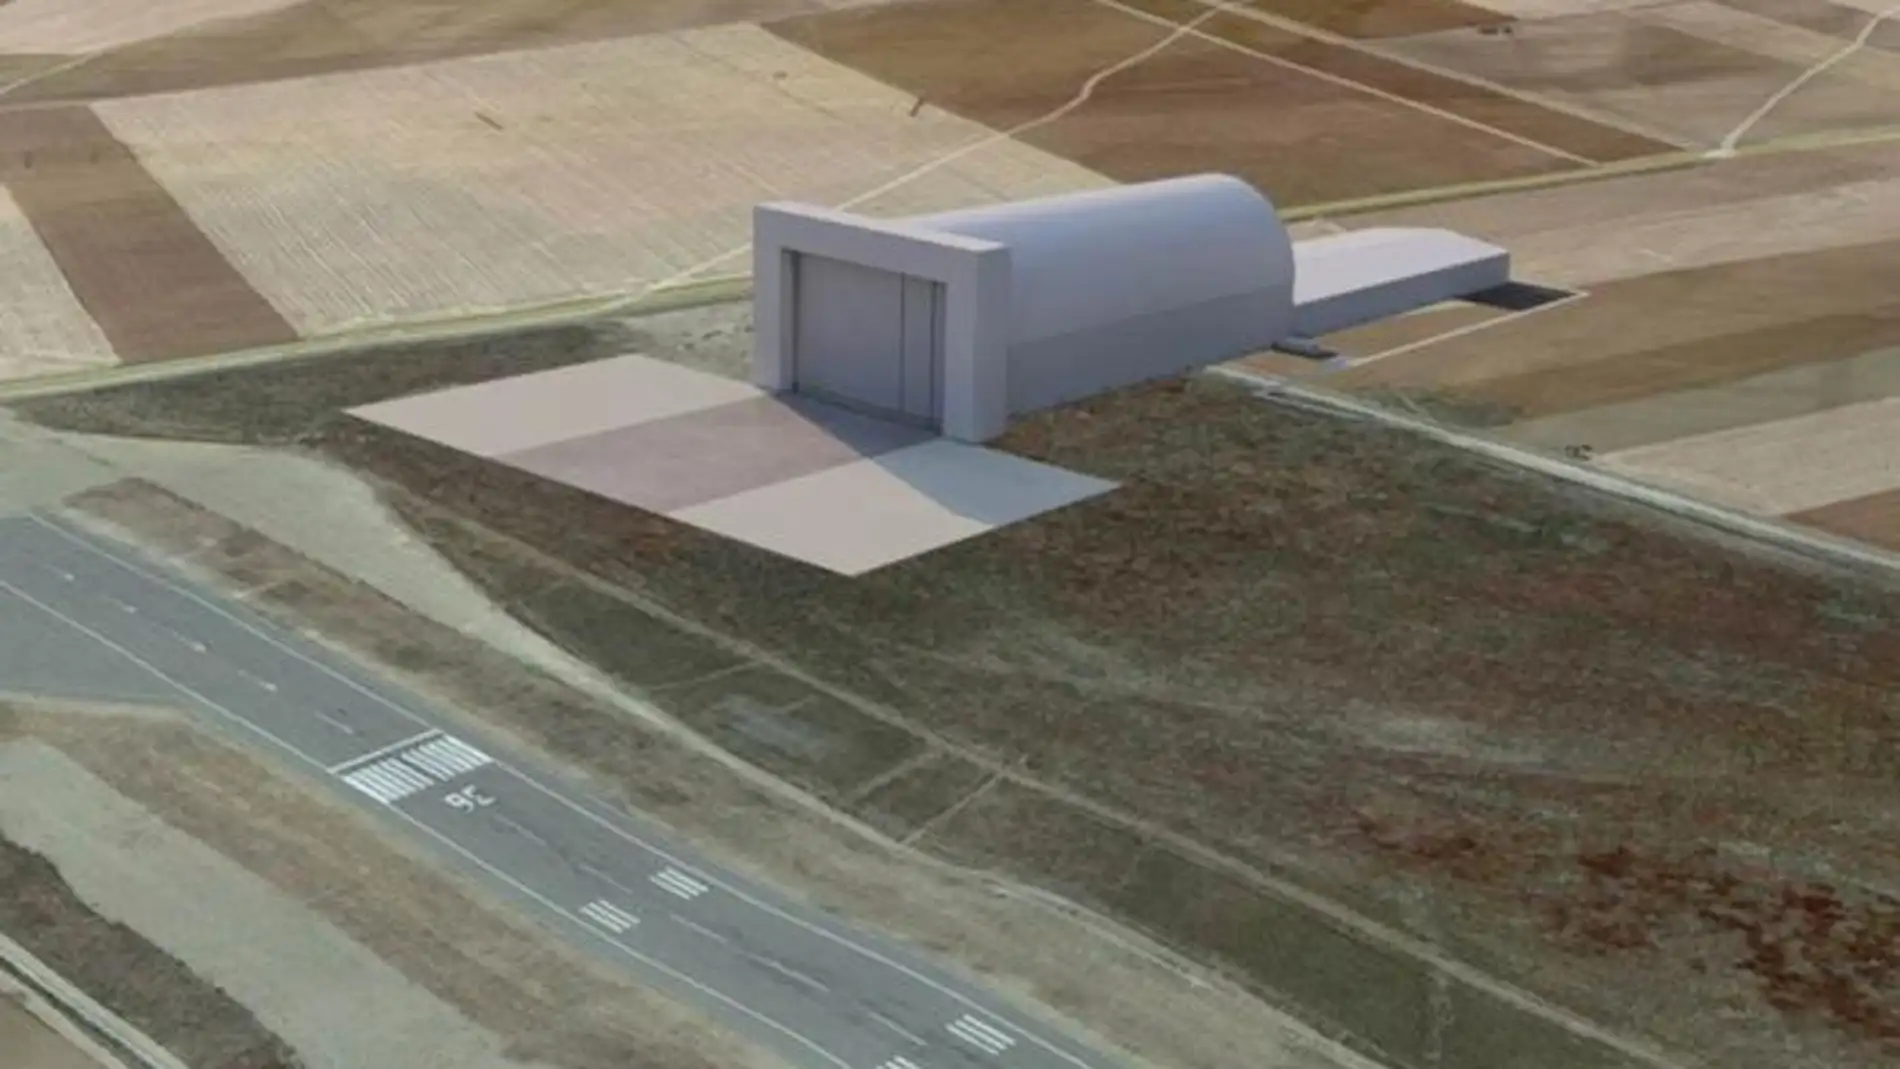 Más de 36 millones de euros en un hangar para dirigibles estratosféricos